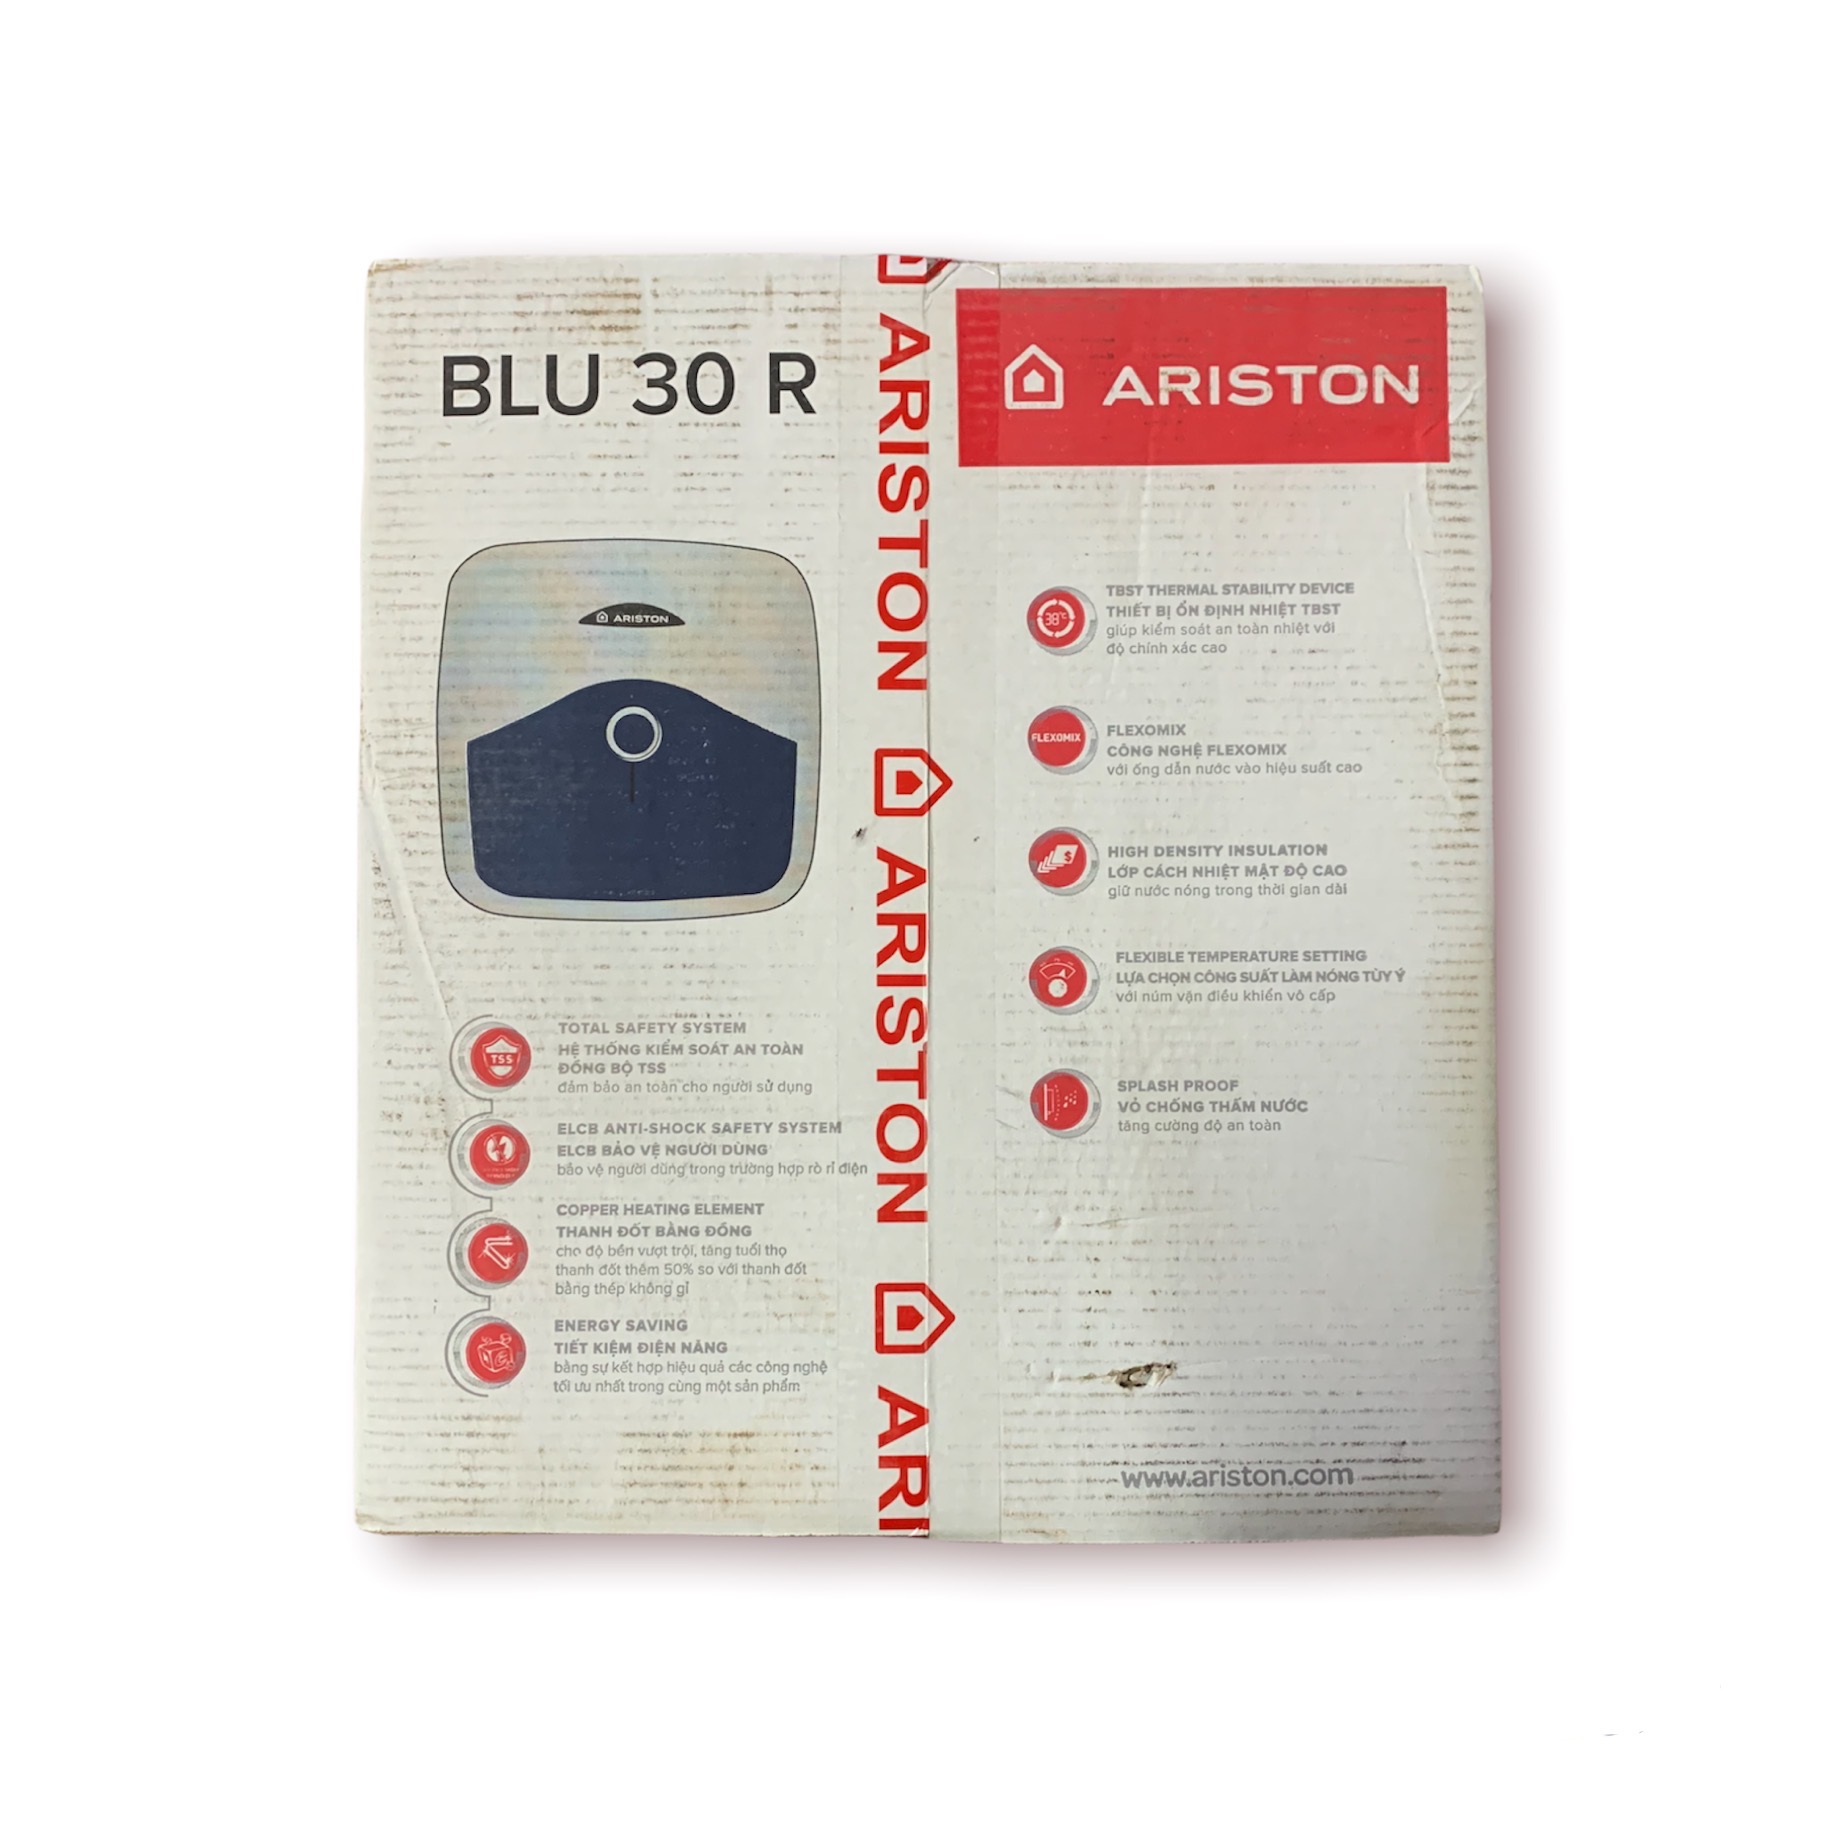 Bình nước nóng gián tiếp ARISTON 30 lít BLU 30R(Bình vuông) - Hàng chính hãng